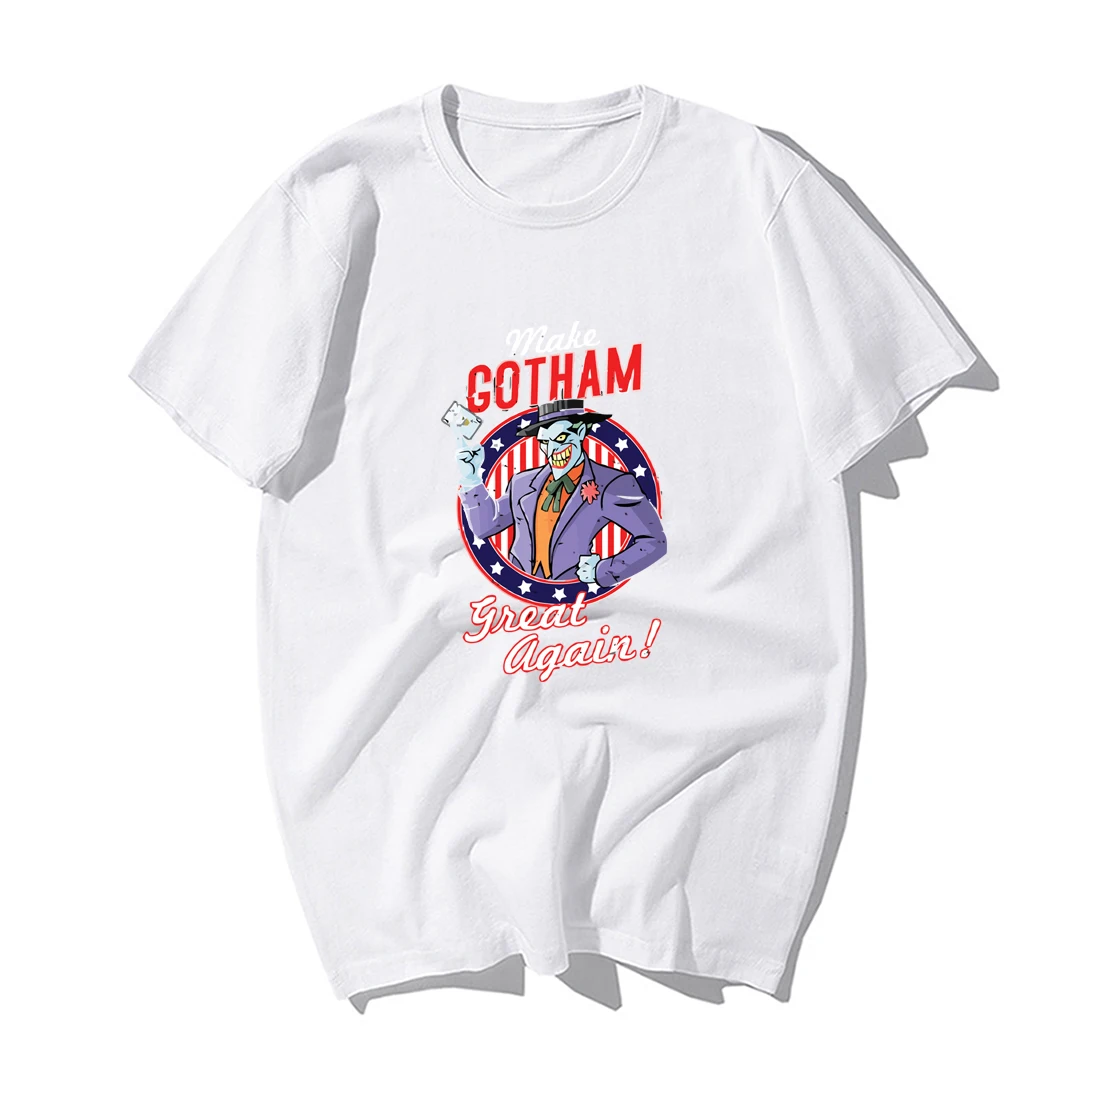 Забавная Футболка Джокер, Мужская футболка Make Gotham Great Again, модные летние повседневные топы, хлопковые футболки с коротким рукавом, топы - Цвет: White 6